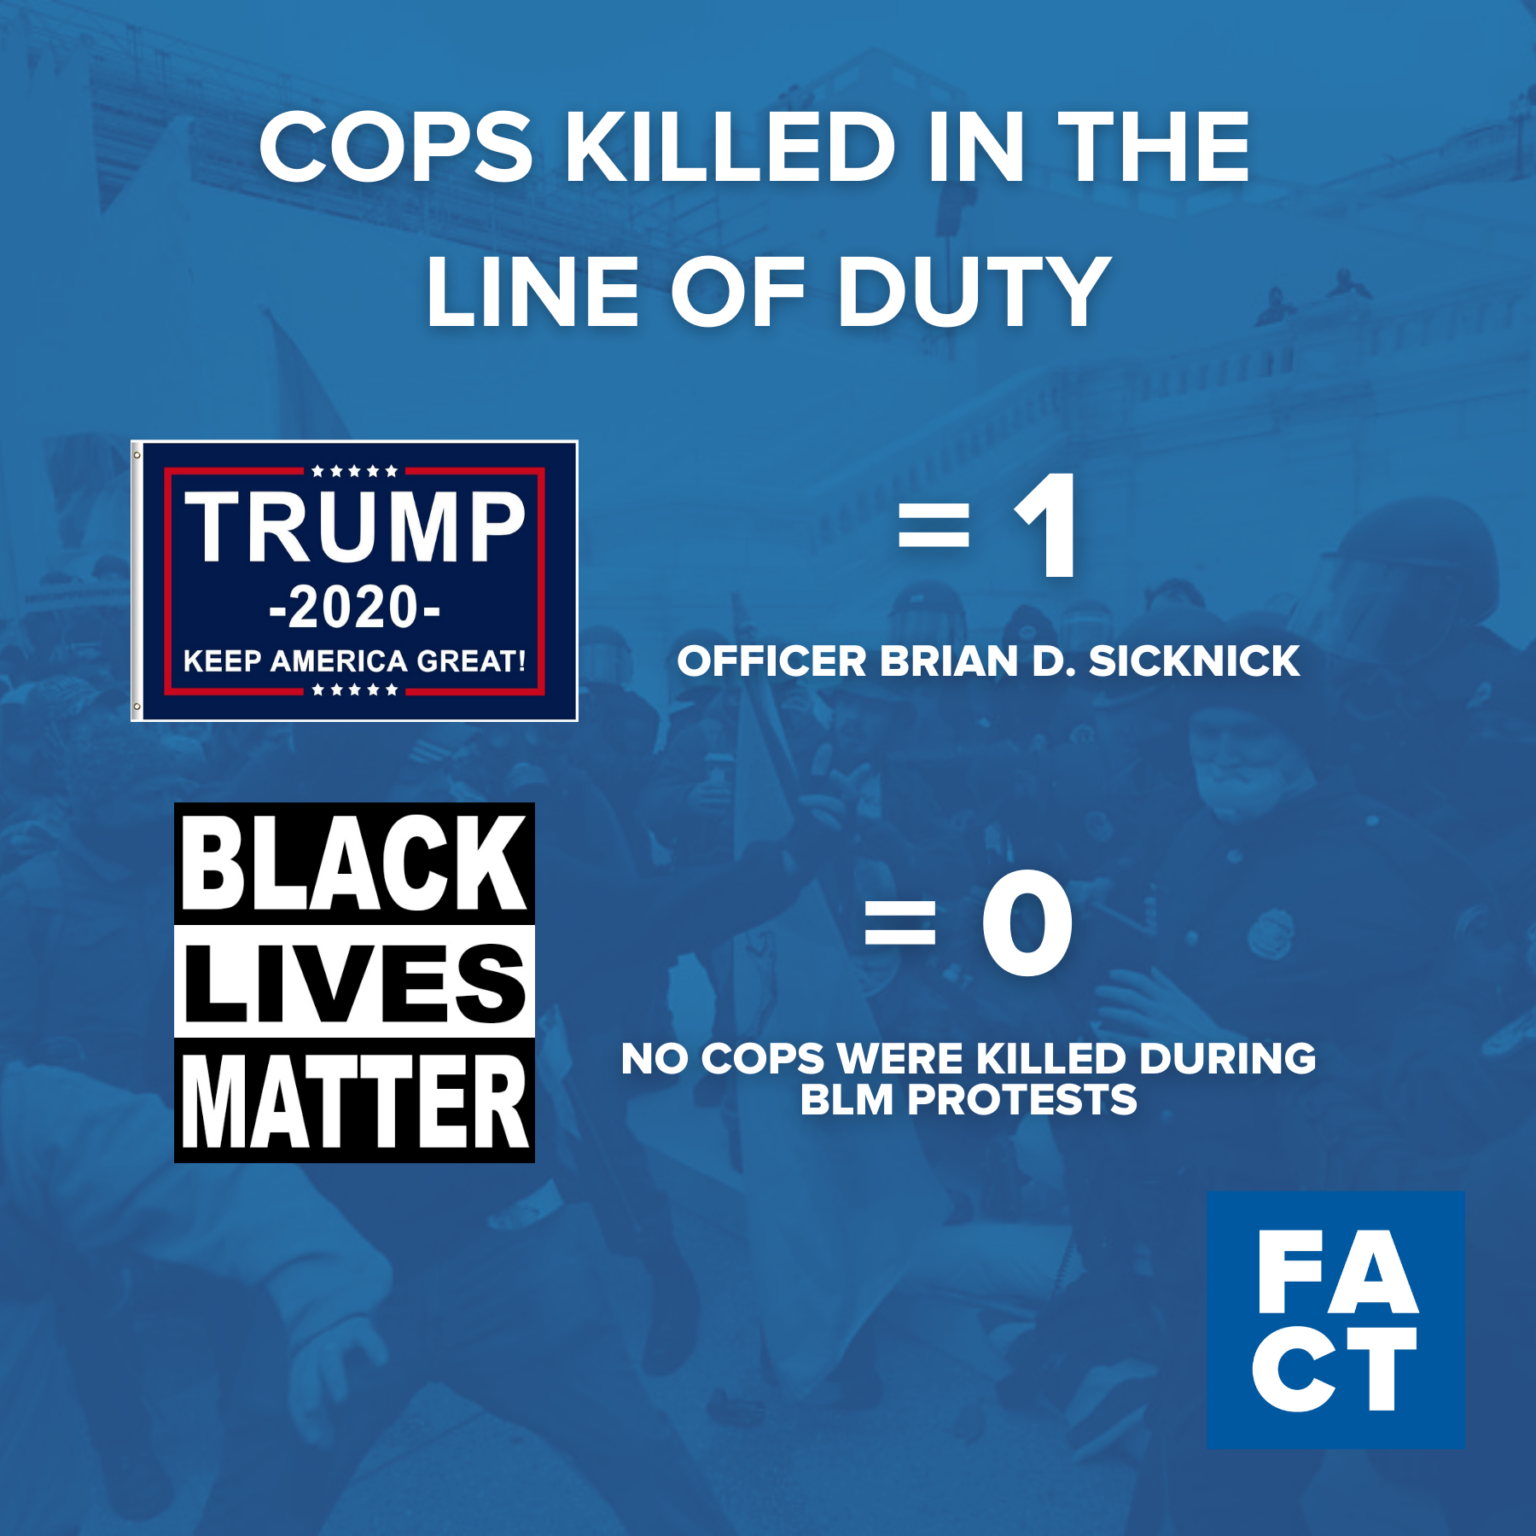 شورش ترامپ باعث کشته شدن بیشتر پلیس شد تا اعتراضات به زندگی سیاهان